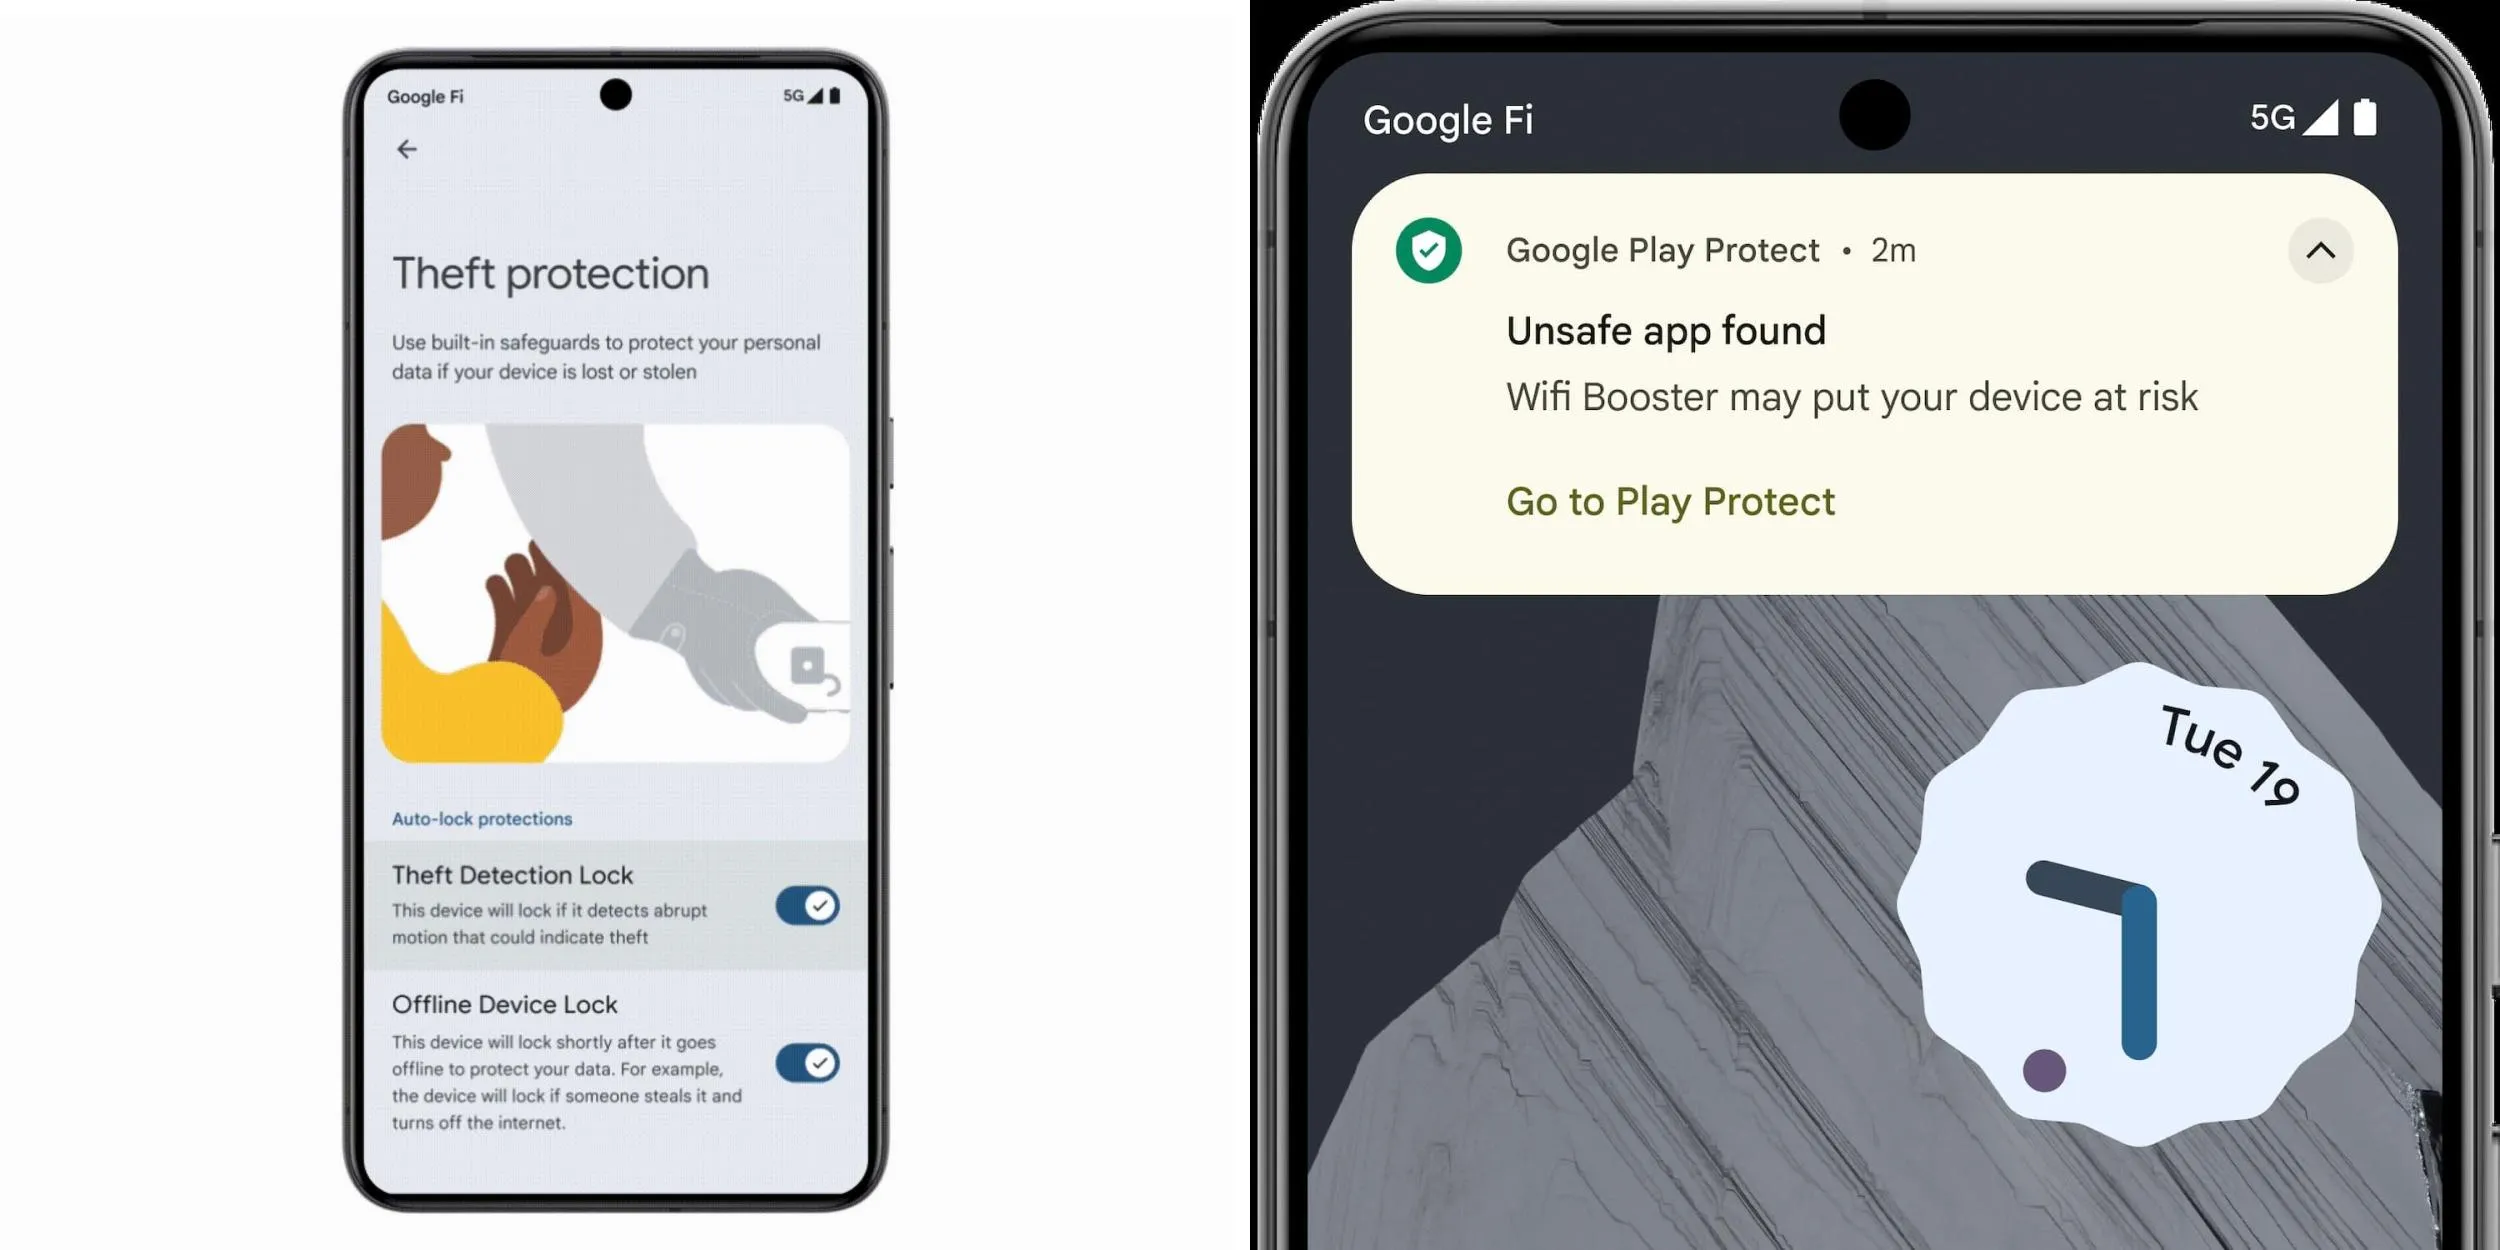 Android antirrobo, protege tu móvil con IA y nuevas herramientas